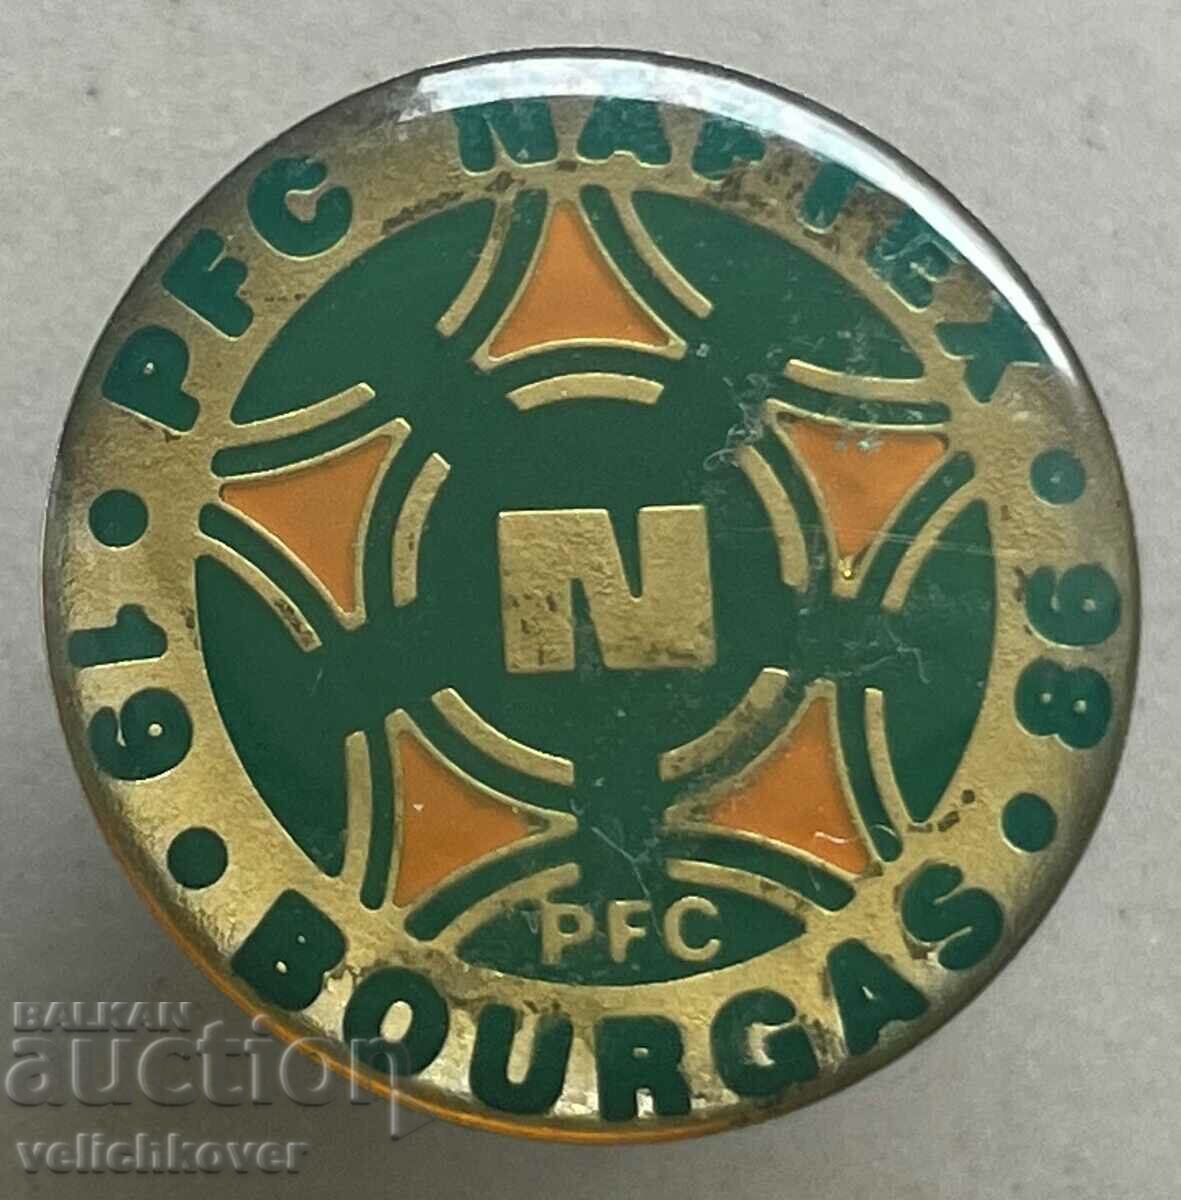 34903 България знак футболен клуб Нафтекс Бургас